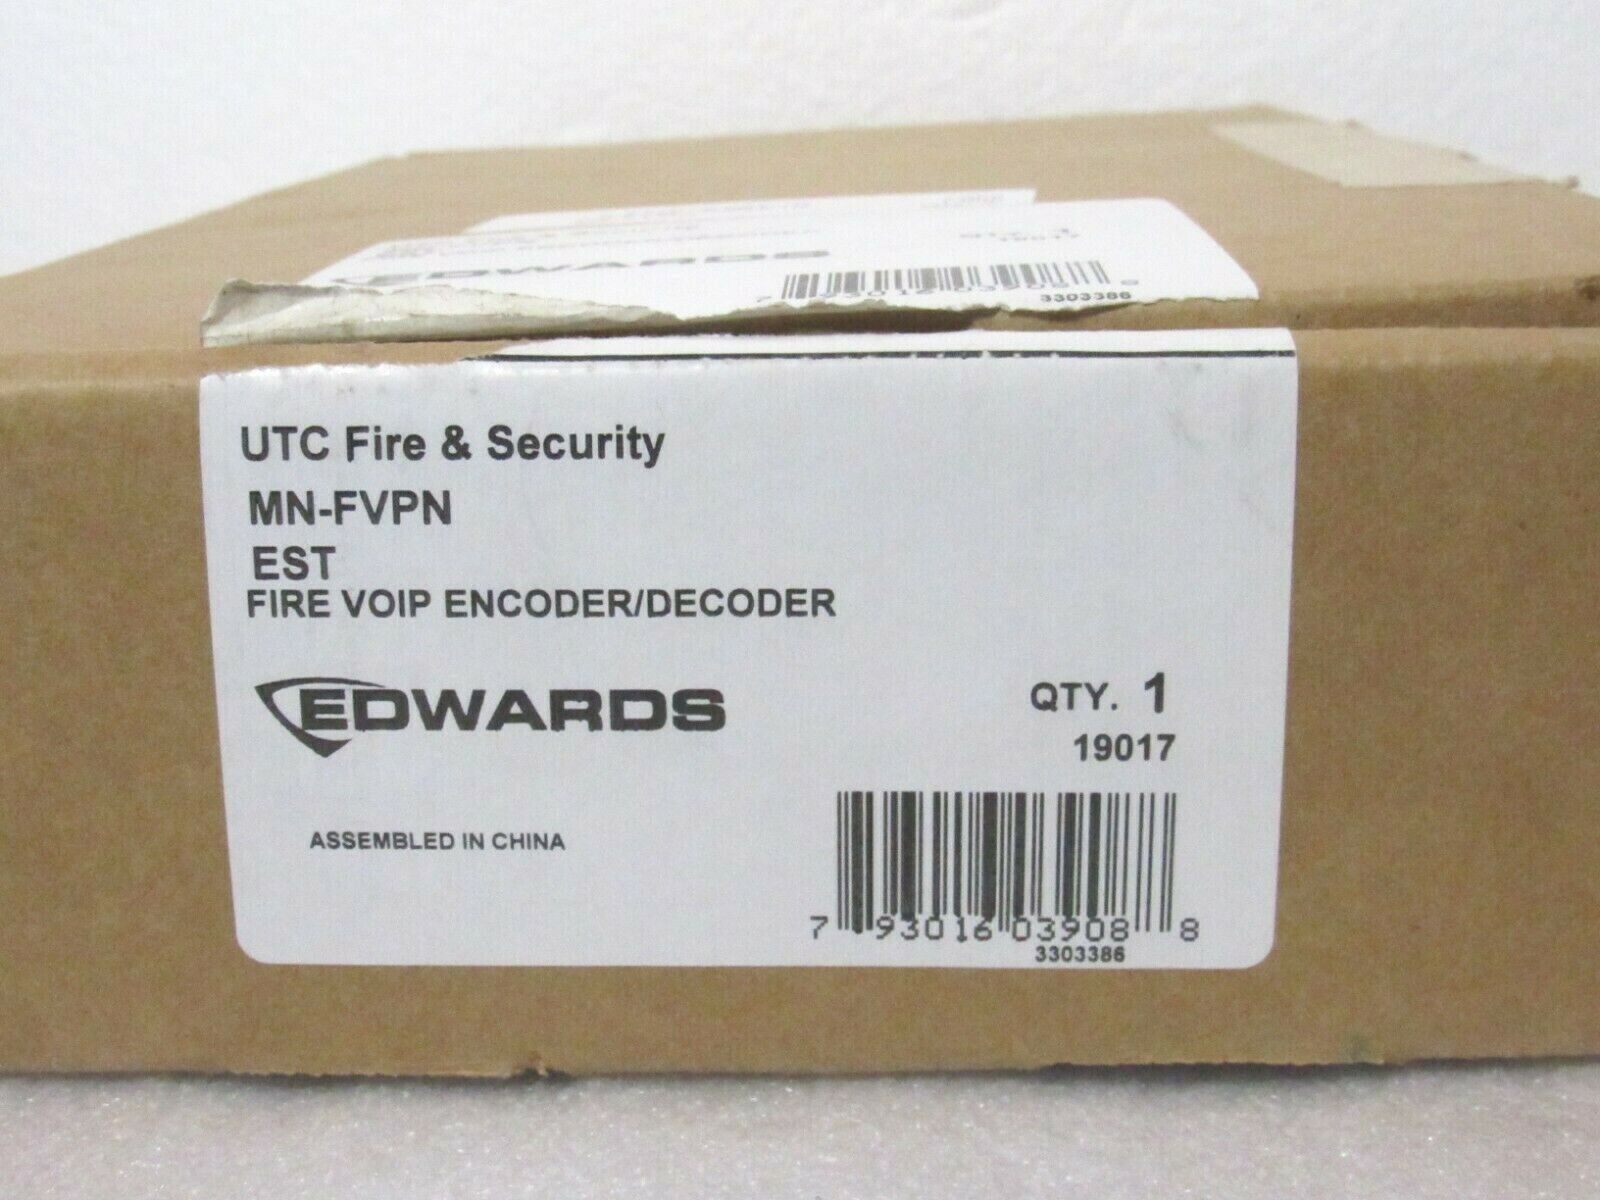 UTC GE Edwards EST MN-FVPN Fire VOIP Encoder Decoder [CTOKT]